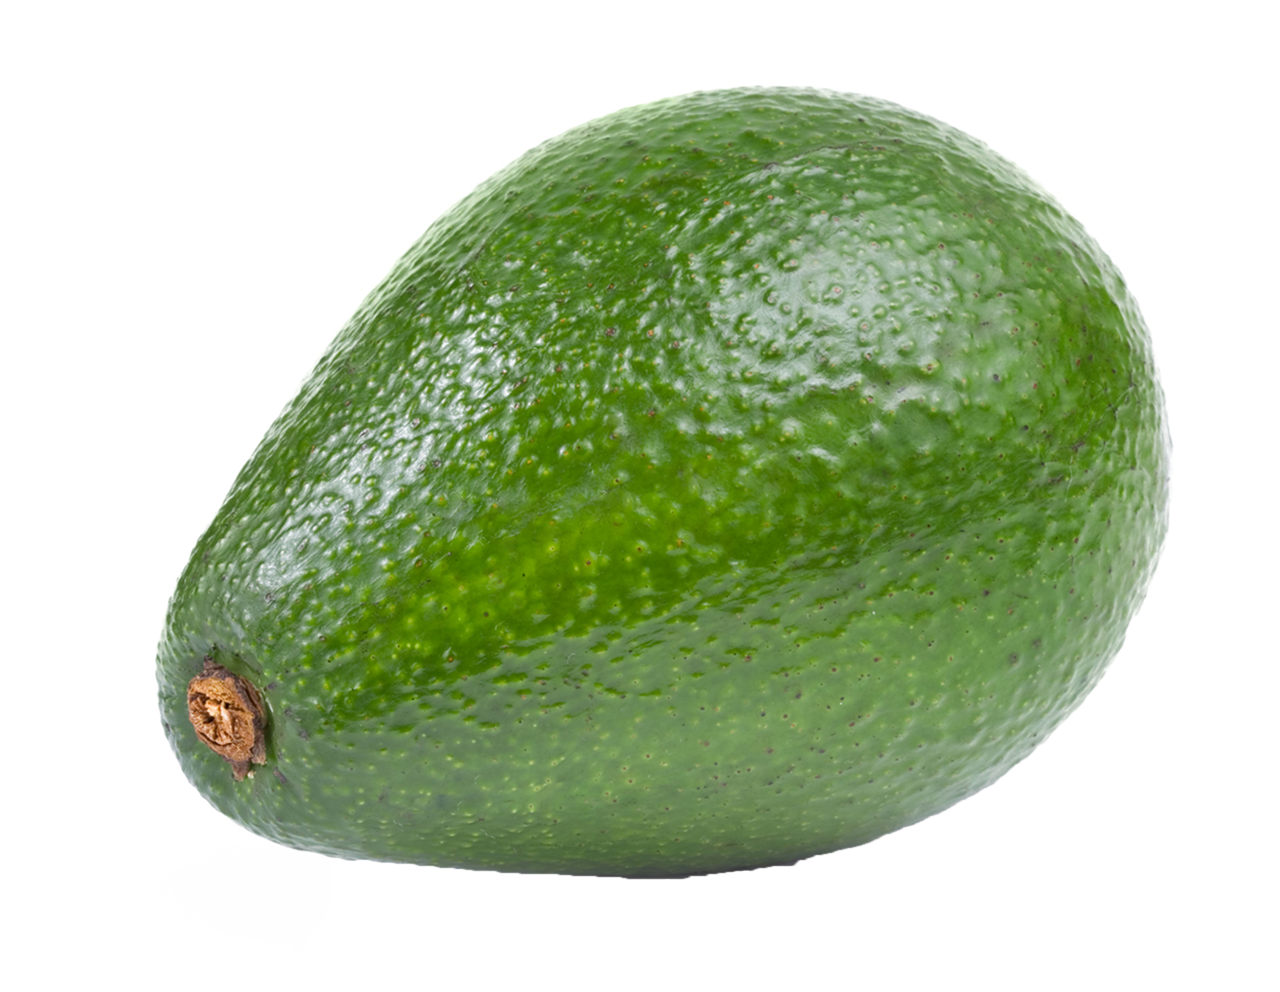 Green avocado image PNG